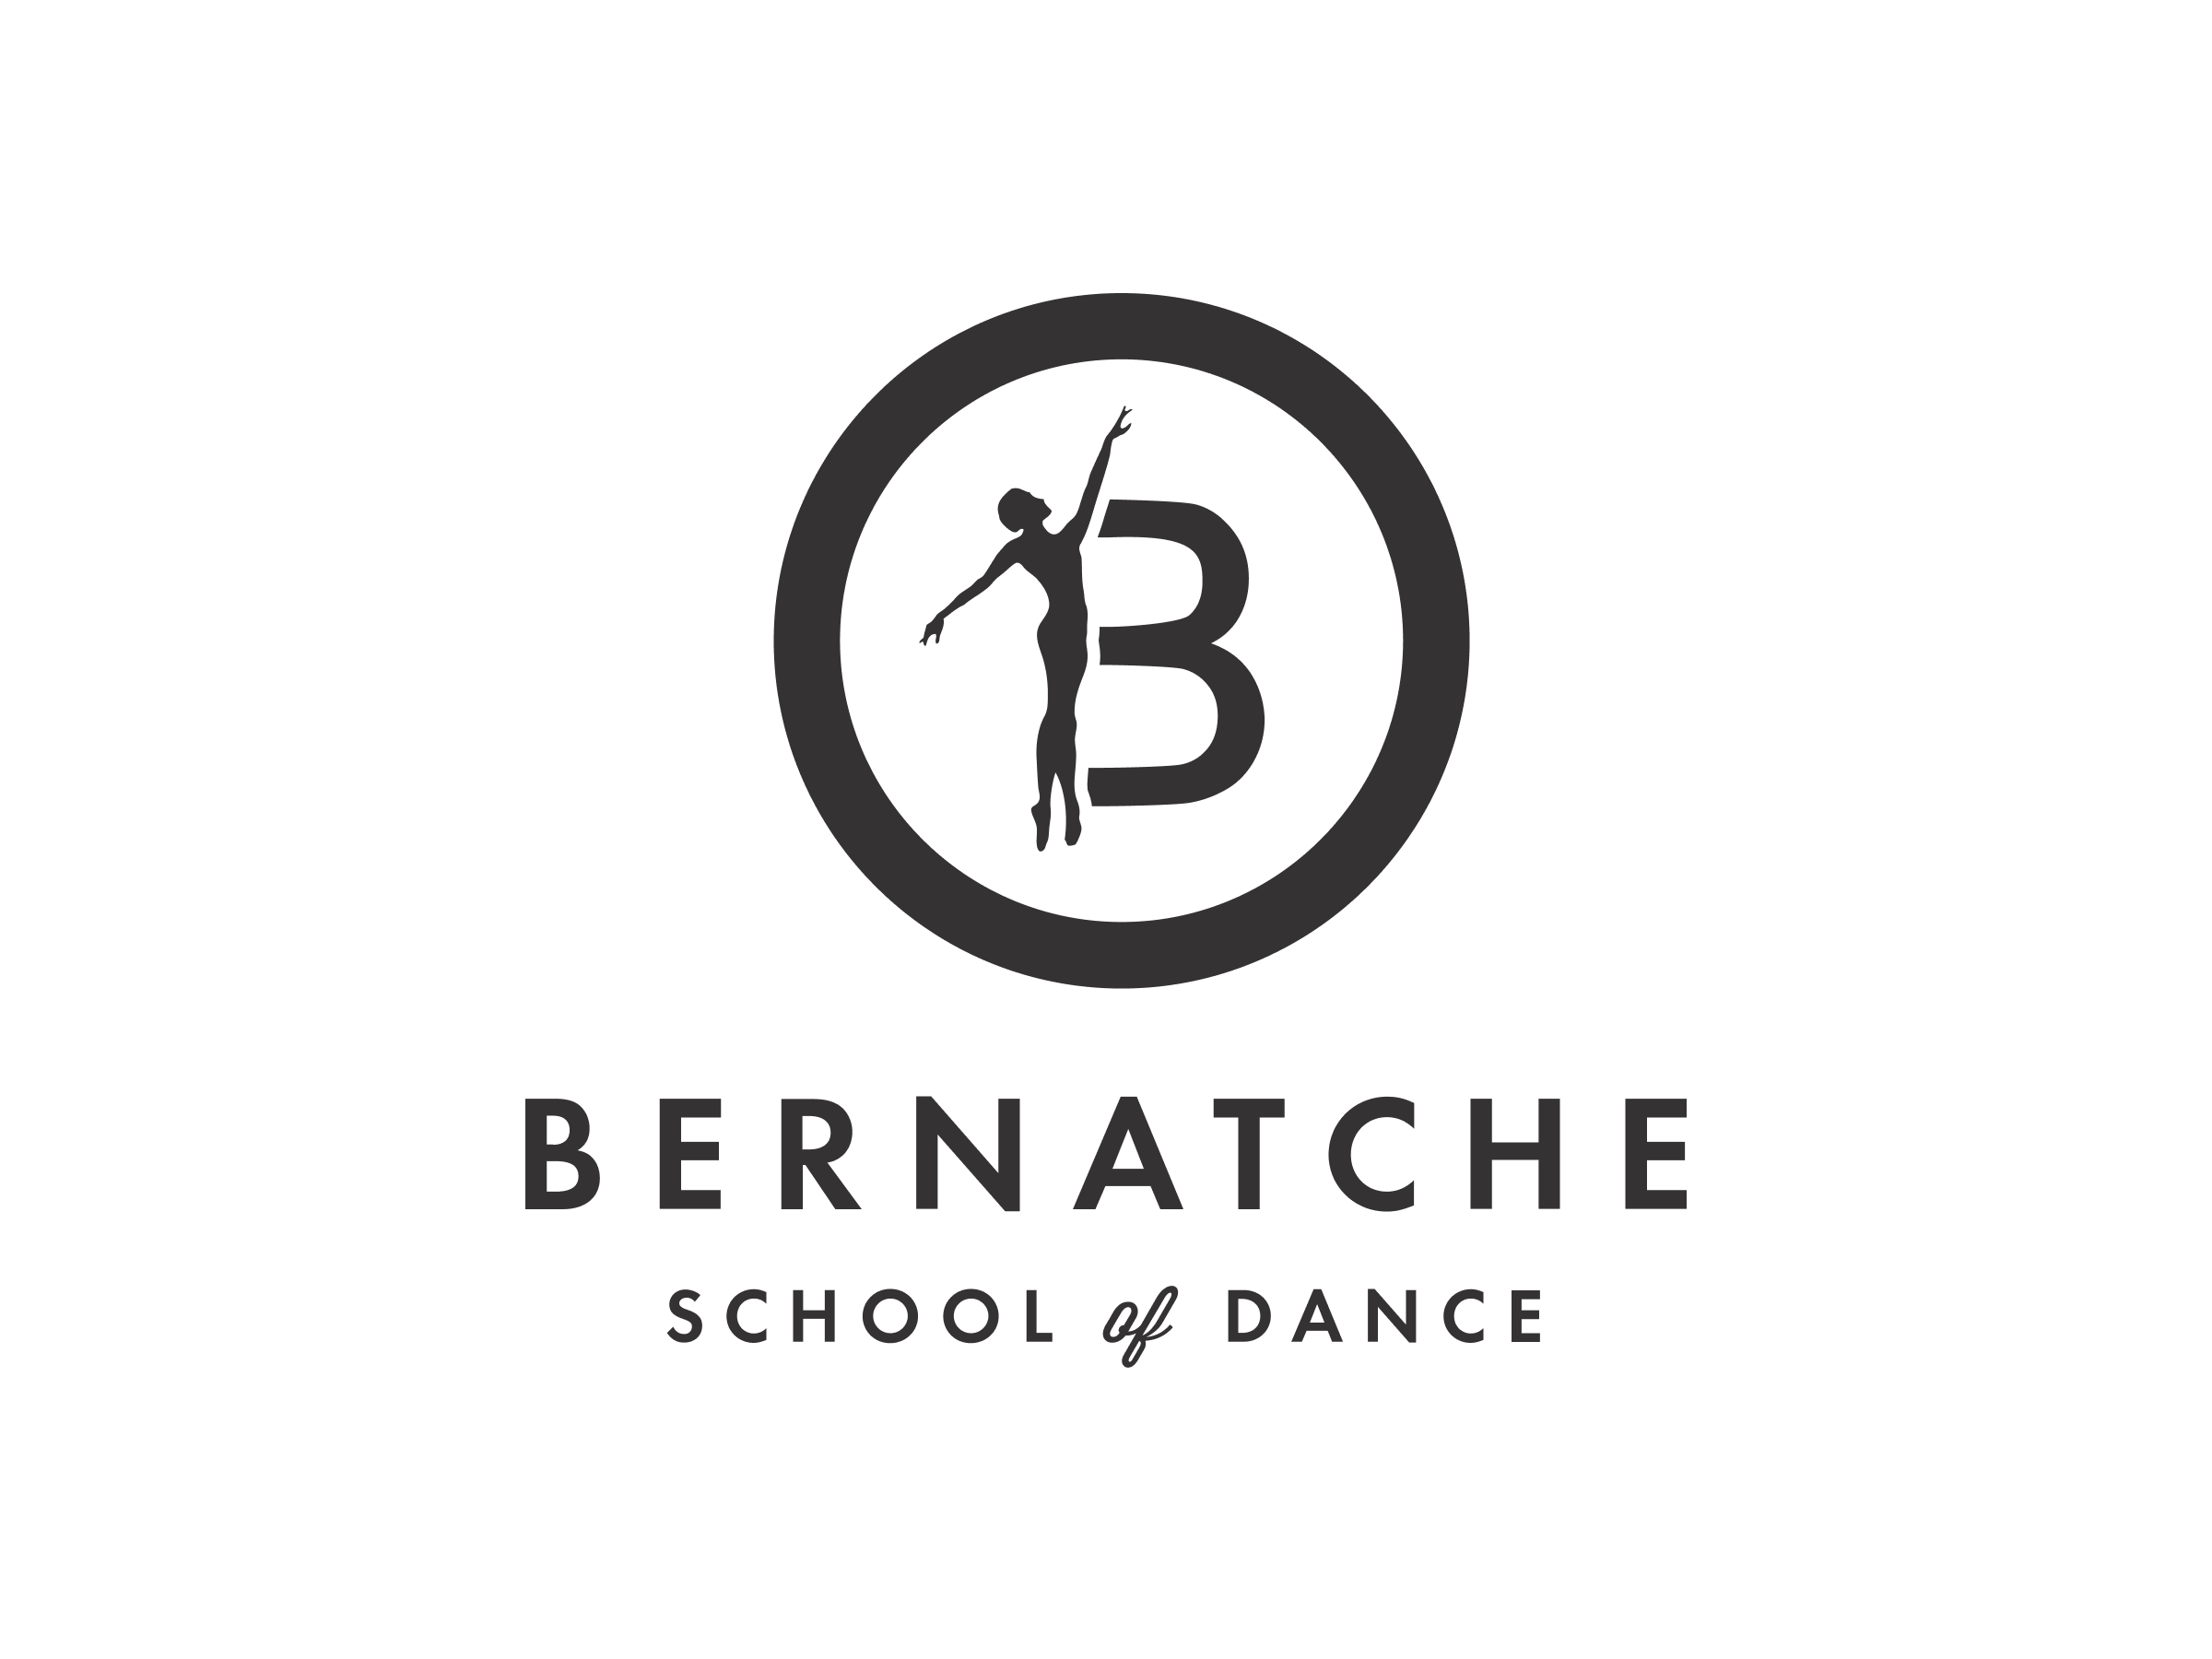 Bernatche School of Dance